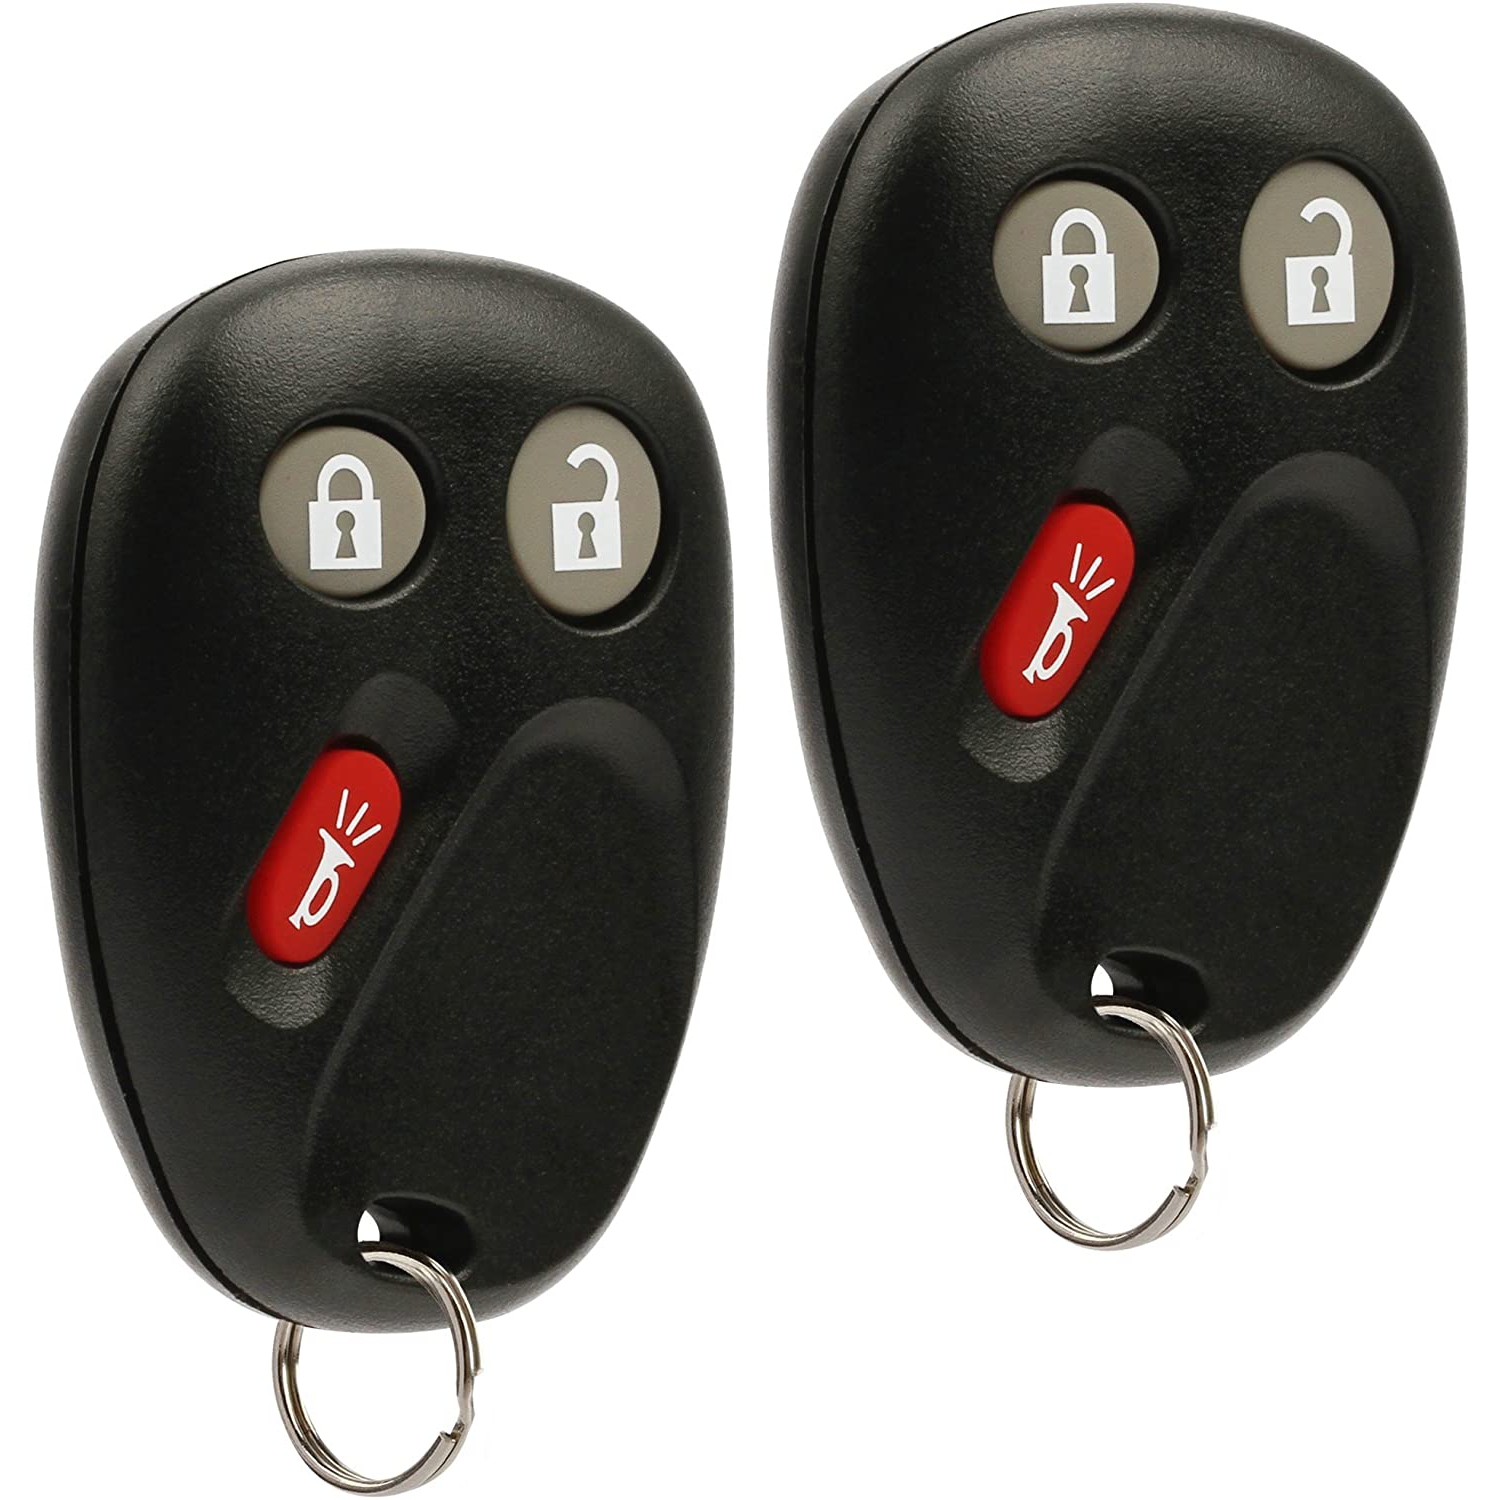 Car Key Fob Keyless Entry Remote fits Buick Rainier / Chevy Trailblazer / GMC Envoy / Isuzu Ascender / Oldsmobile Bravada (fits Part # 15008008 15008009), Set of 2